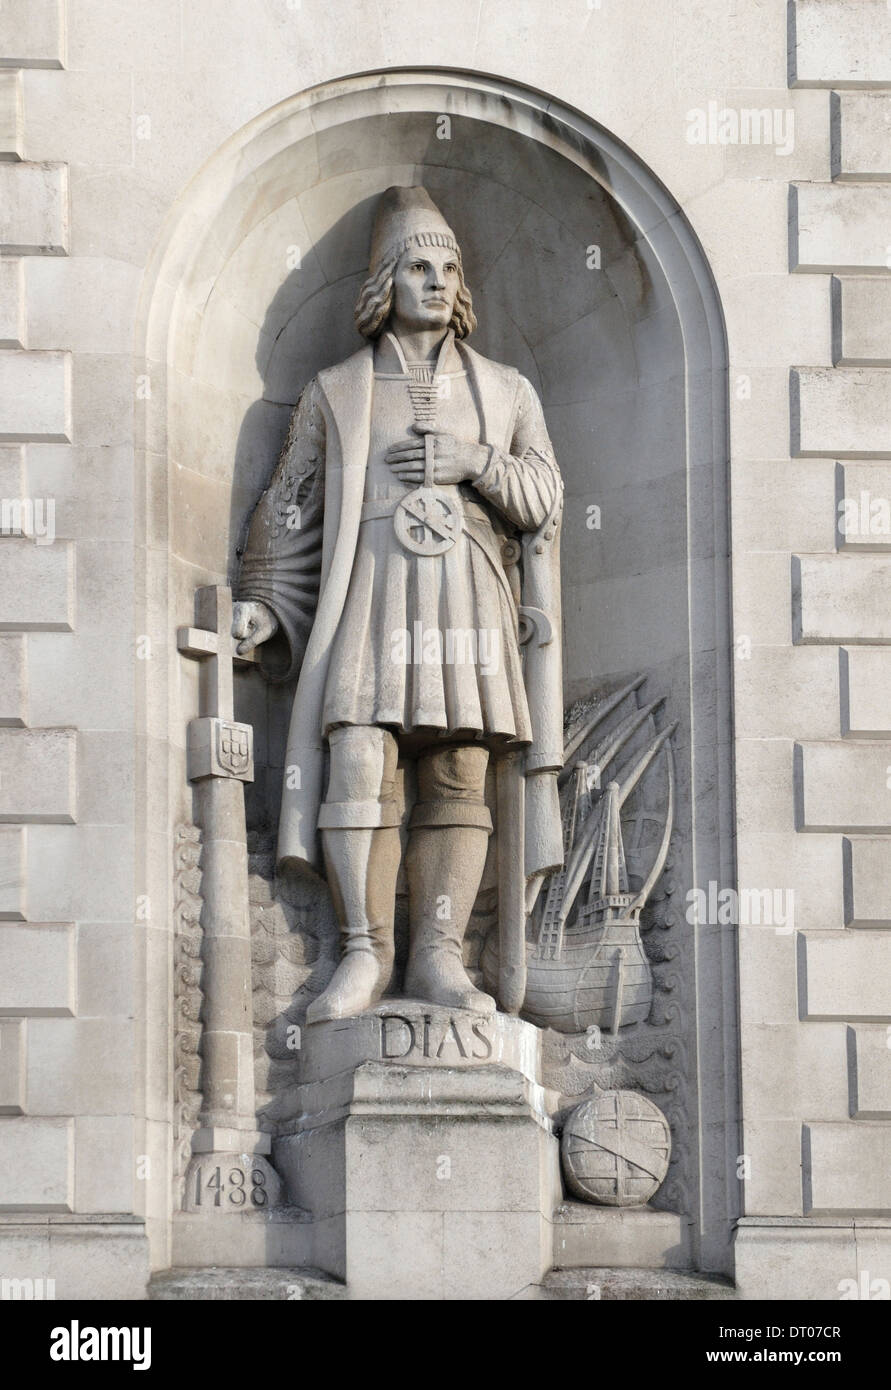 Londres, Angleterre, Royaume-Uni. Statue de Bartolomeu Dias (Bartholomew / explorateur portugais) sur la façade de la maison de l'Afrique du Sud, Trafalgar Sq Banque D'Images